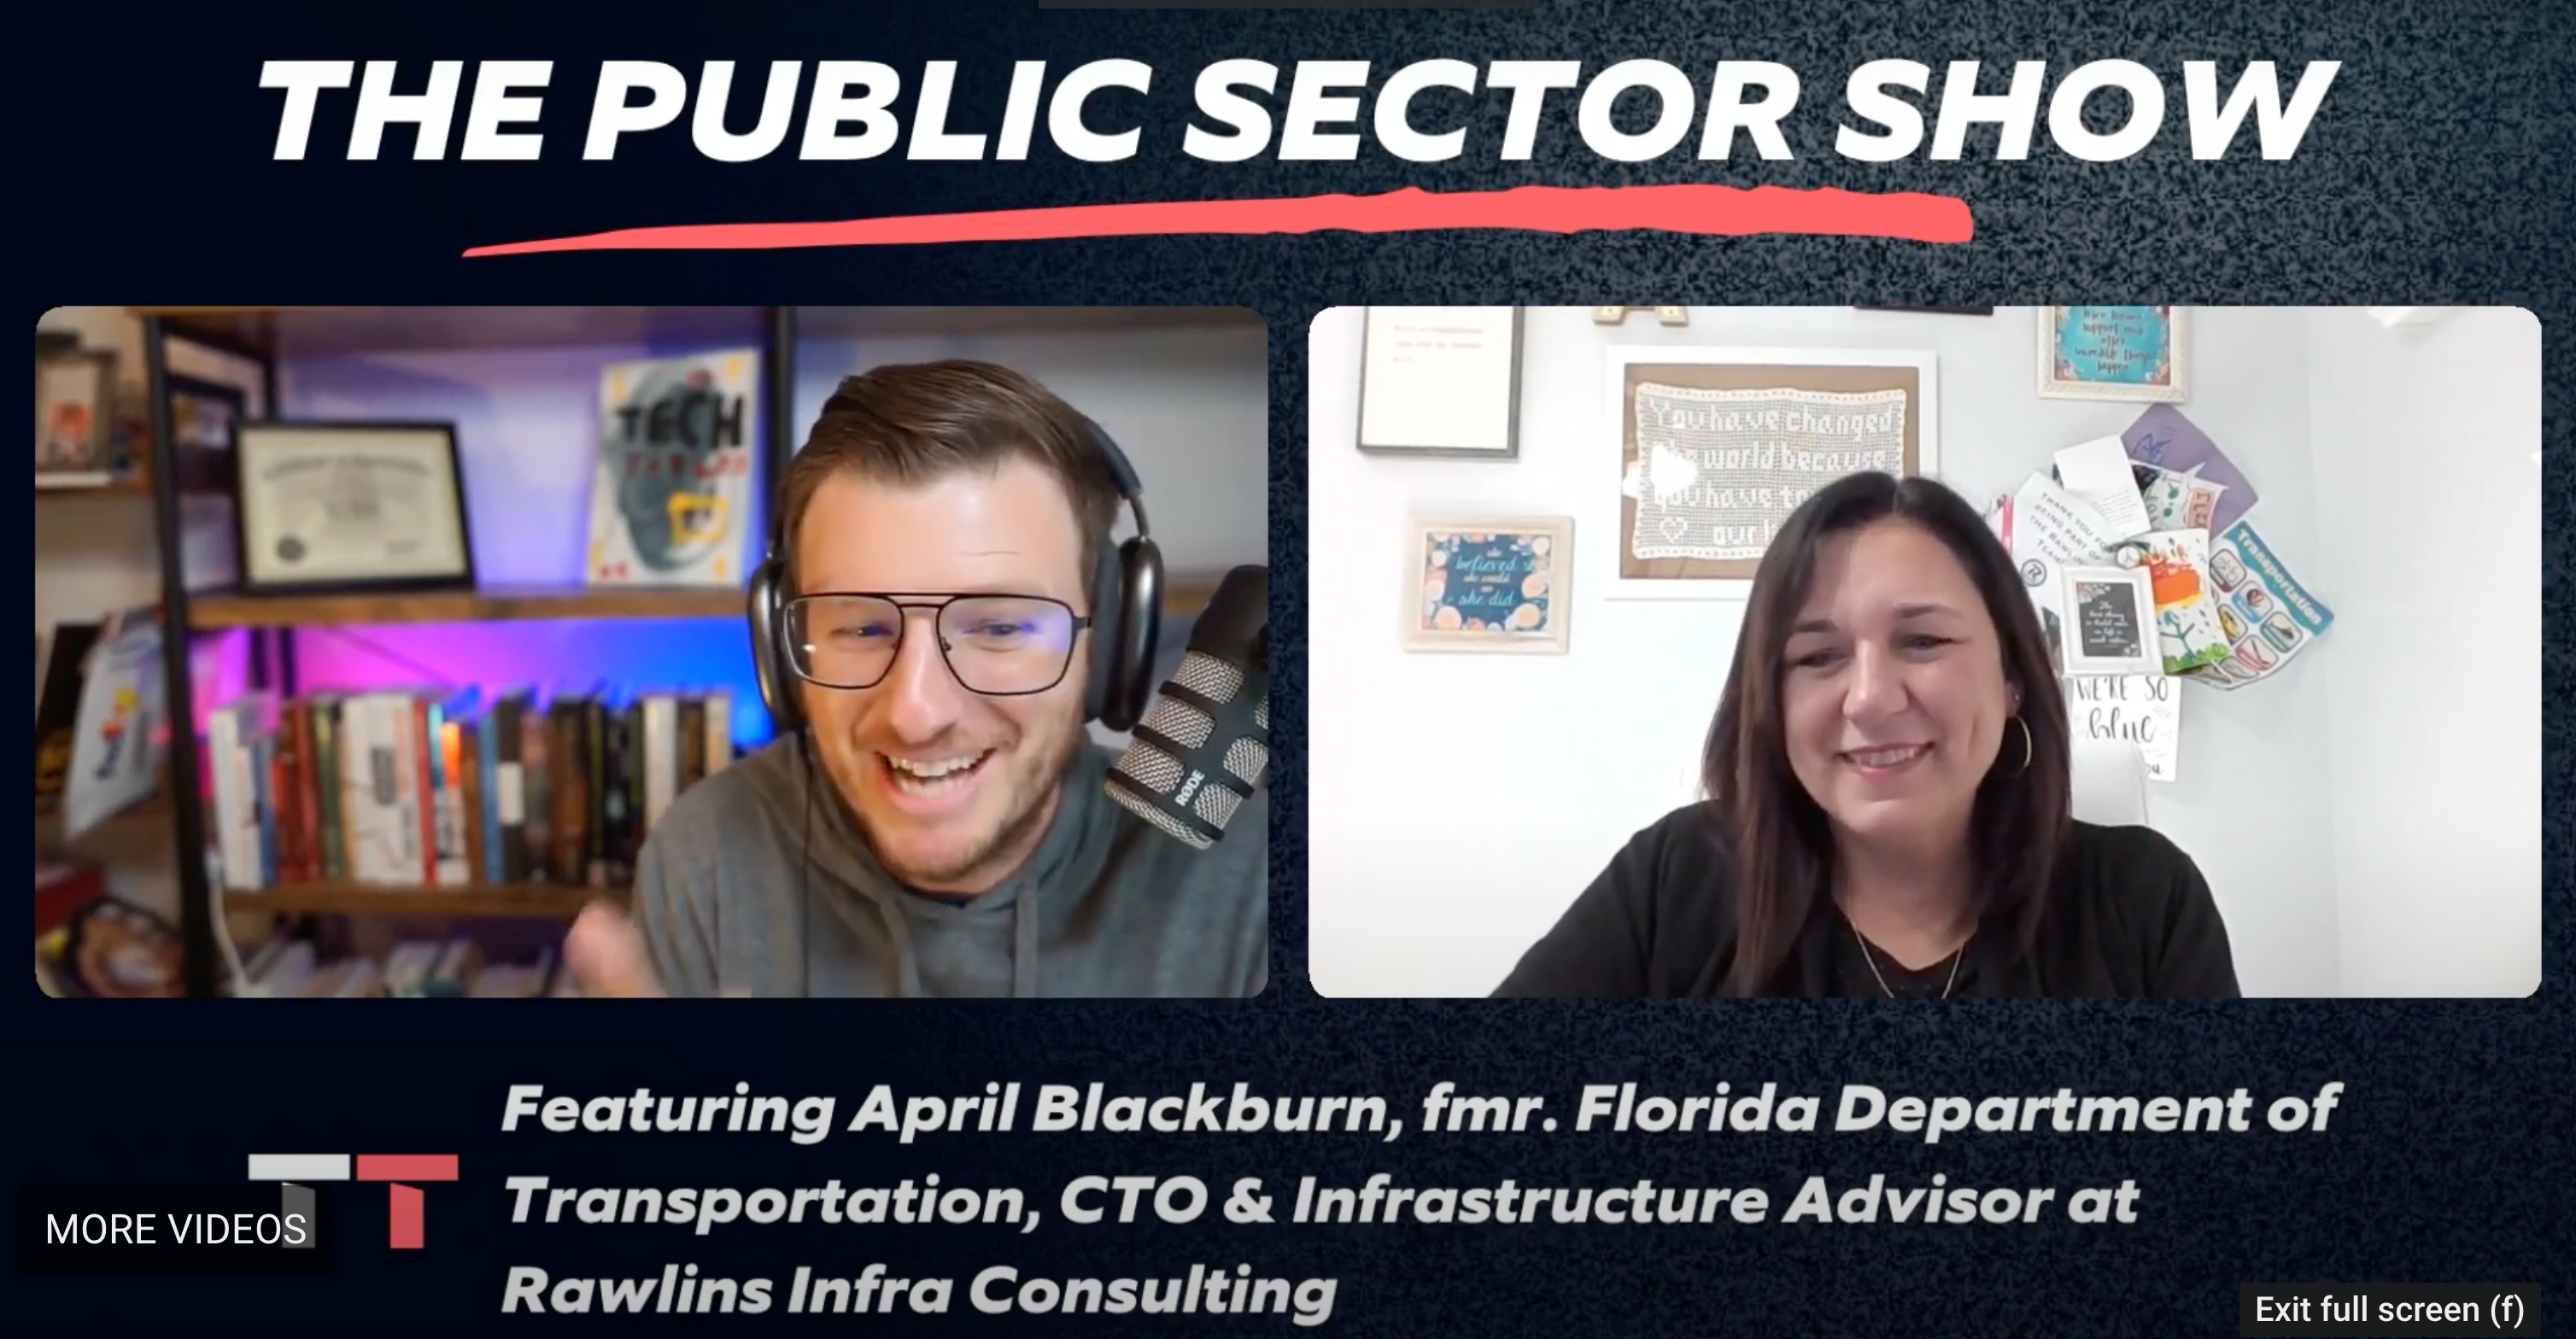 April Blackburn, fmr. Florida Dept. of Transportation, CTO & Infra Advisor at Rawlins